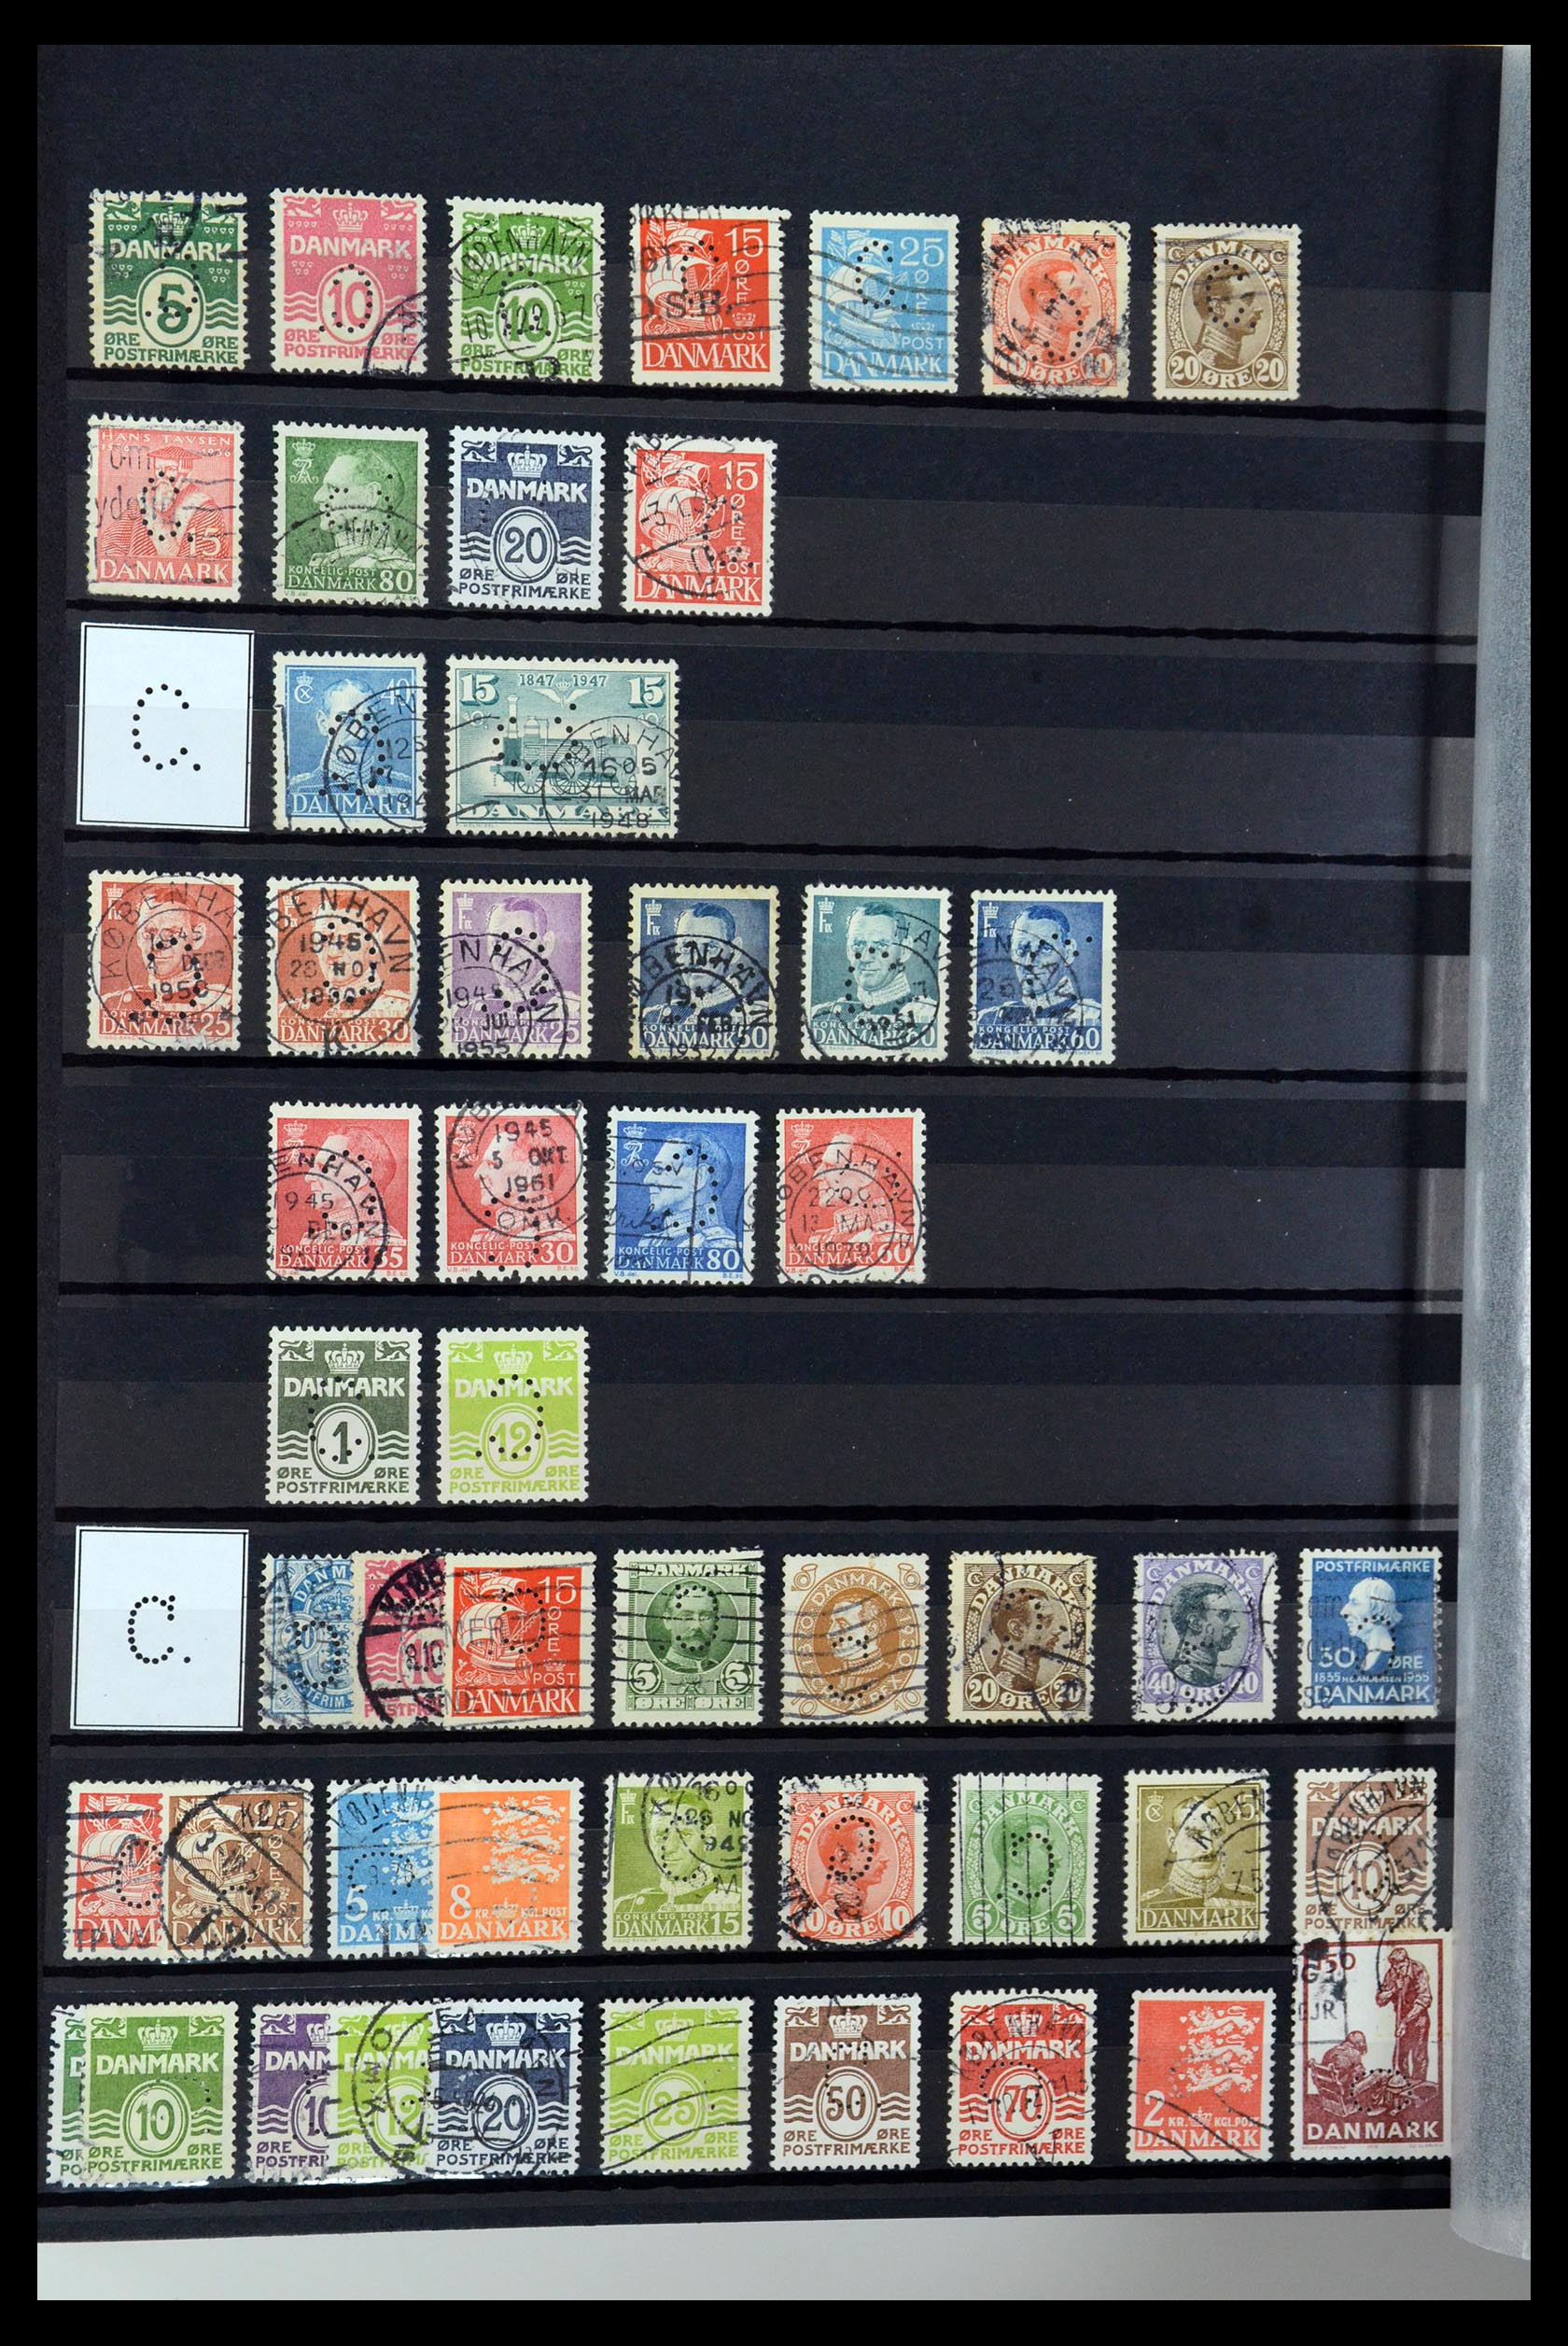 36396 022 - Postzegelverzameling 36396 Denemarken perfins.